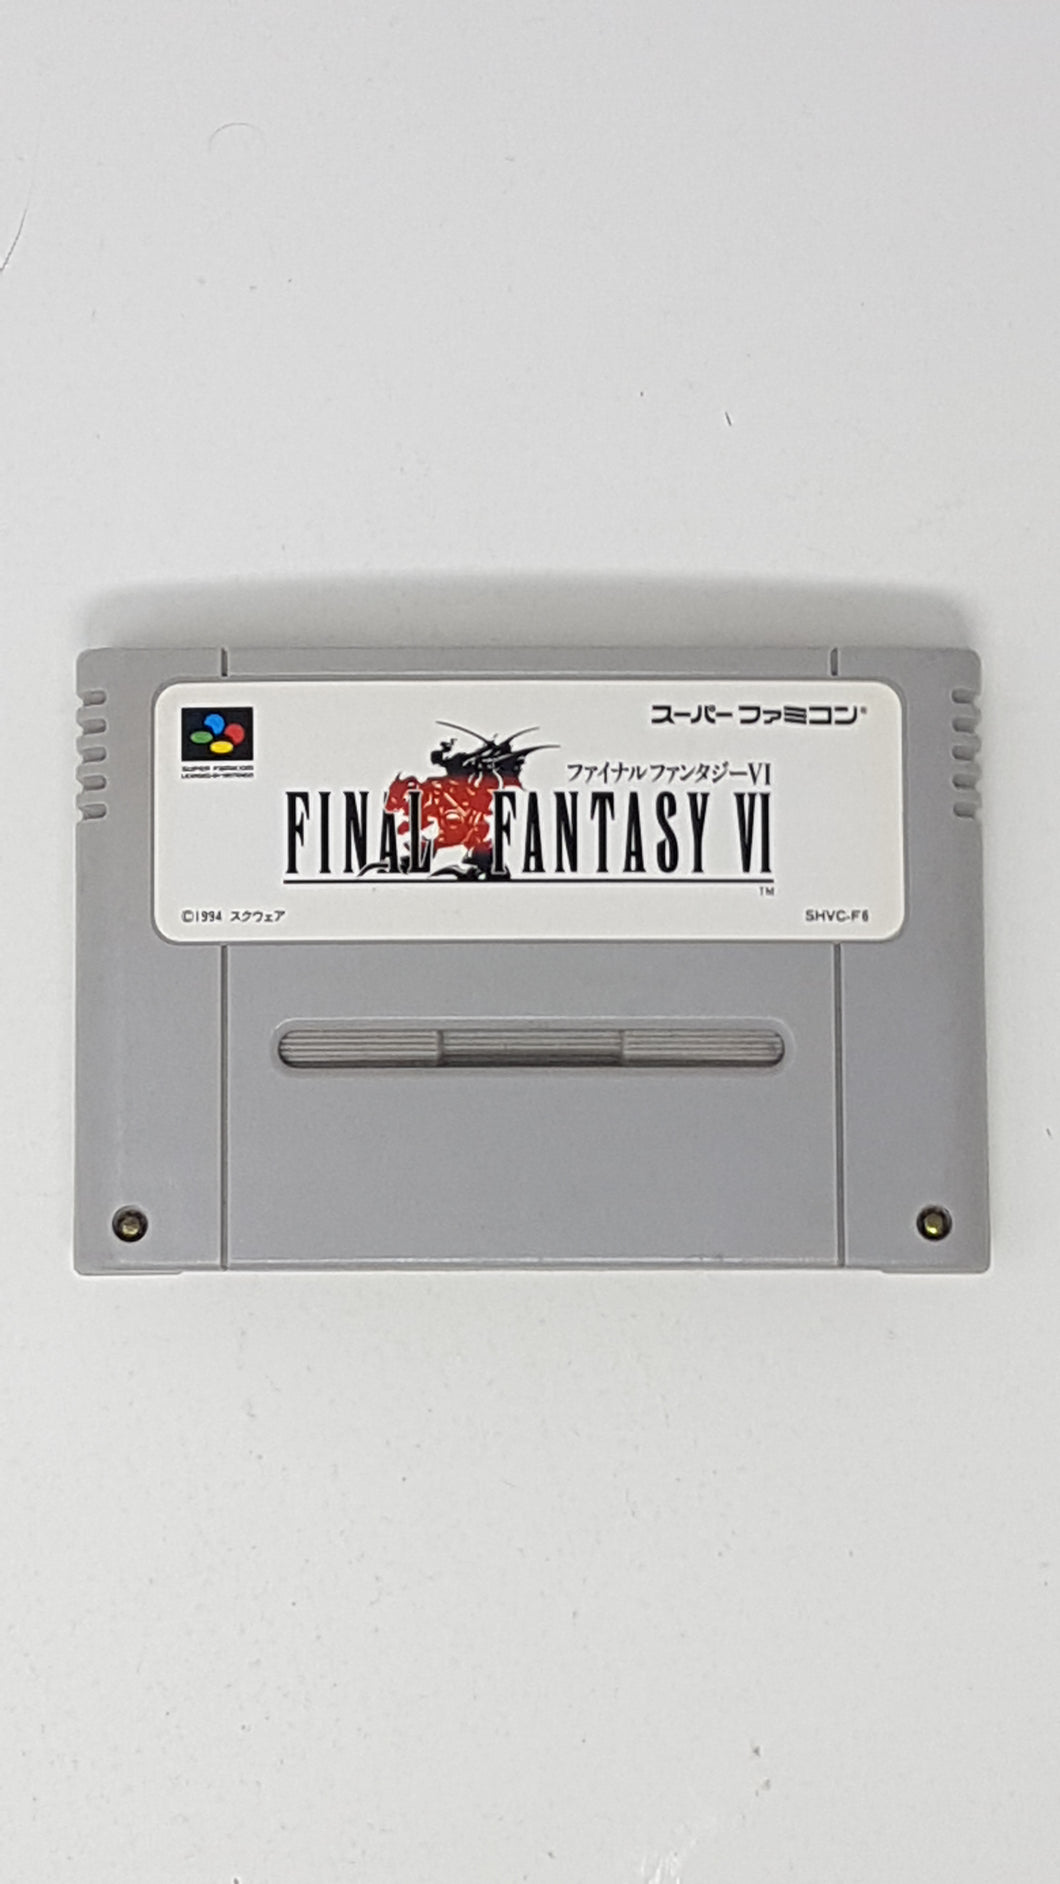 Final Fantasy VI - [Import] Super Famicom | SFC